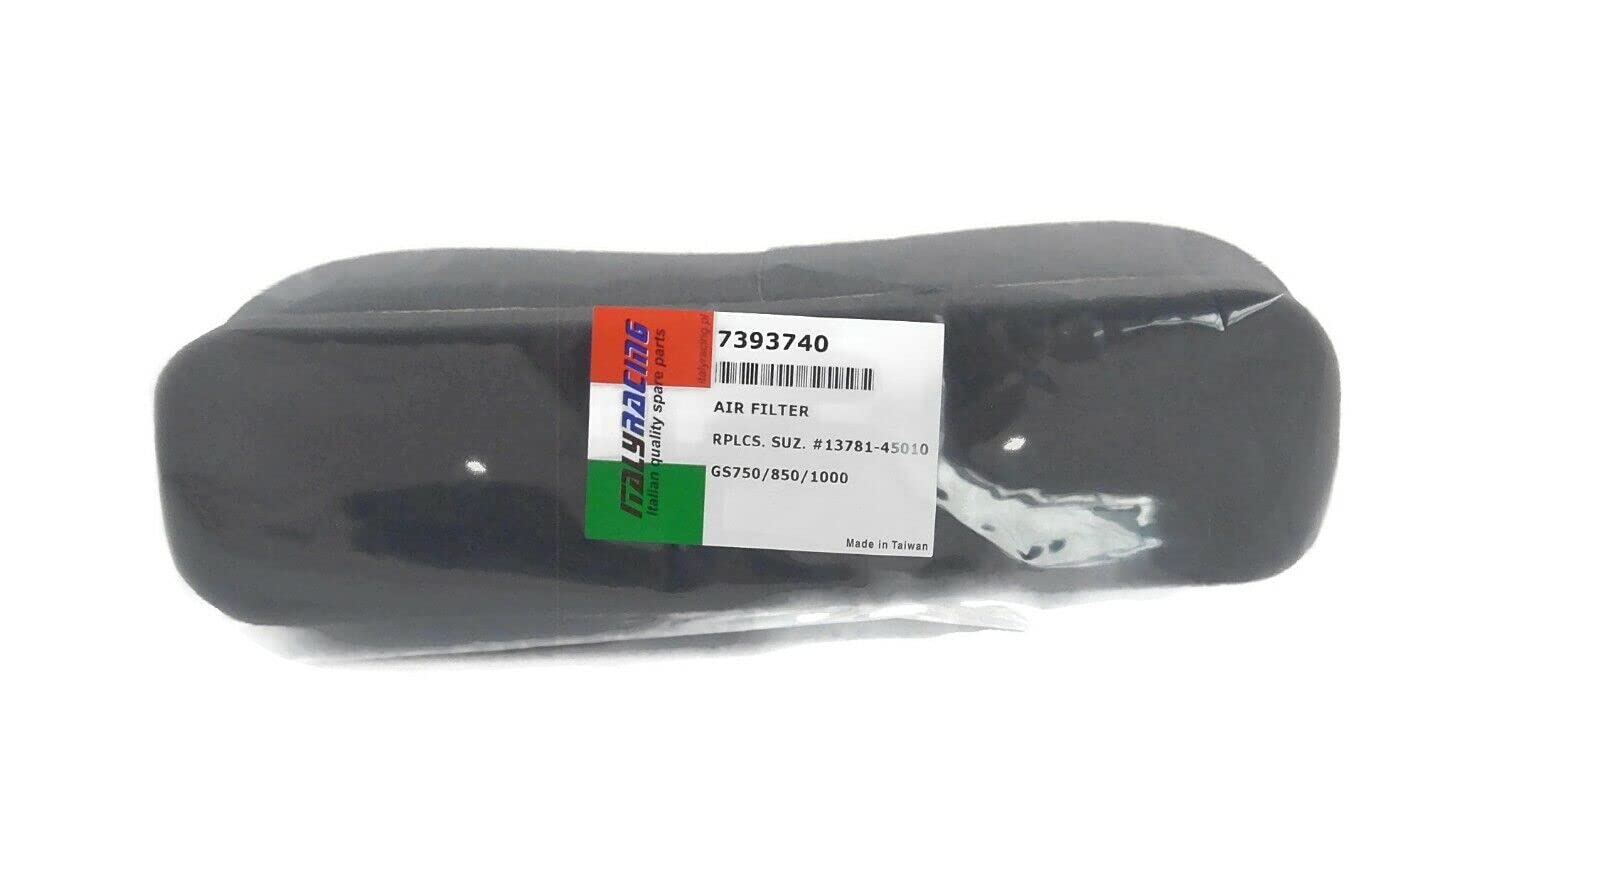 Luftfilter Air filter #13781-45010 für SUZUKI GS 750 850 1000 G von ItalyRacing